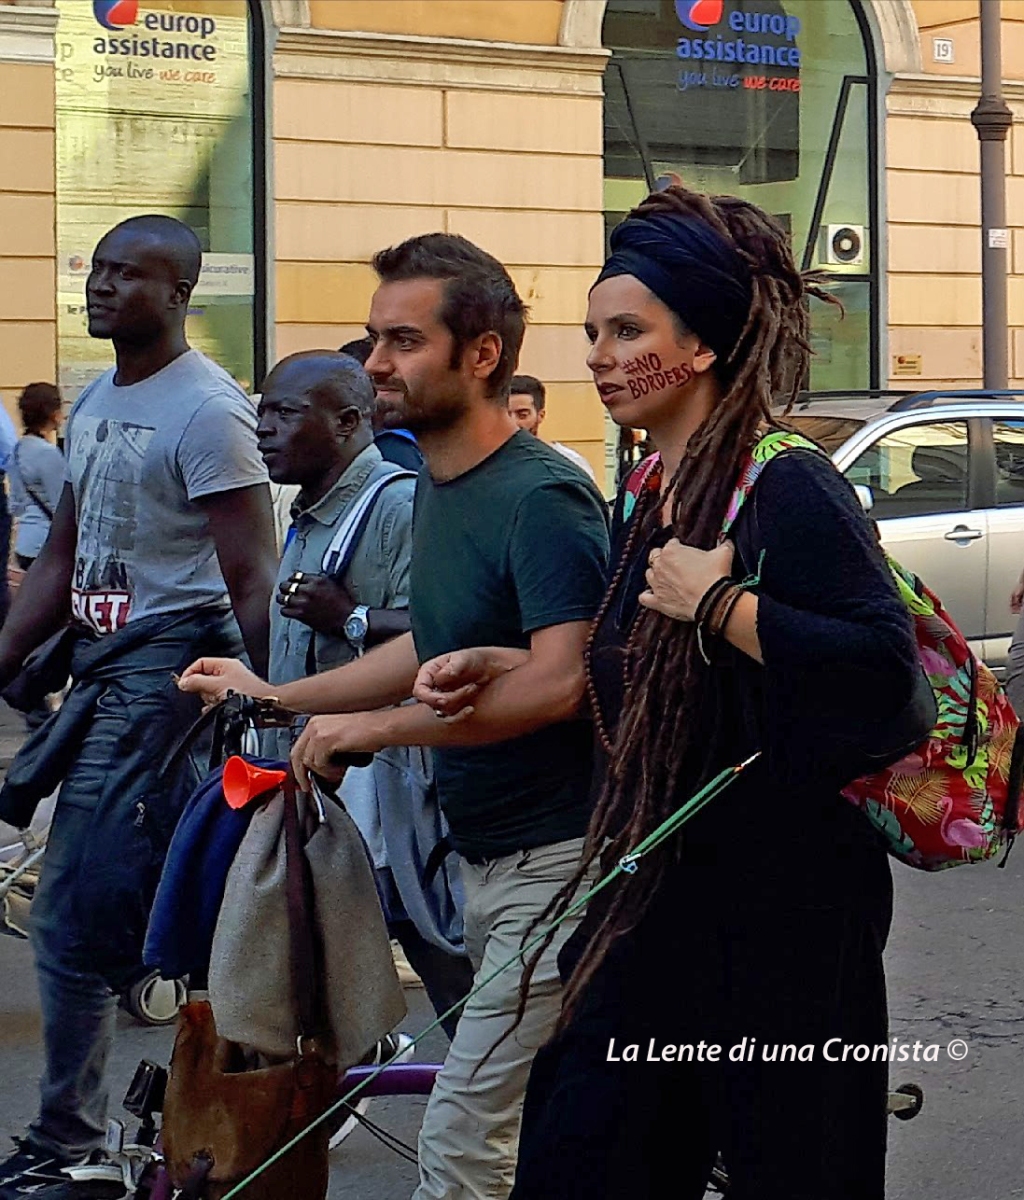 Manifestazione Migrare #Nonèreato, Italiani e migranti in corteo